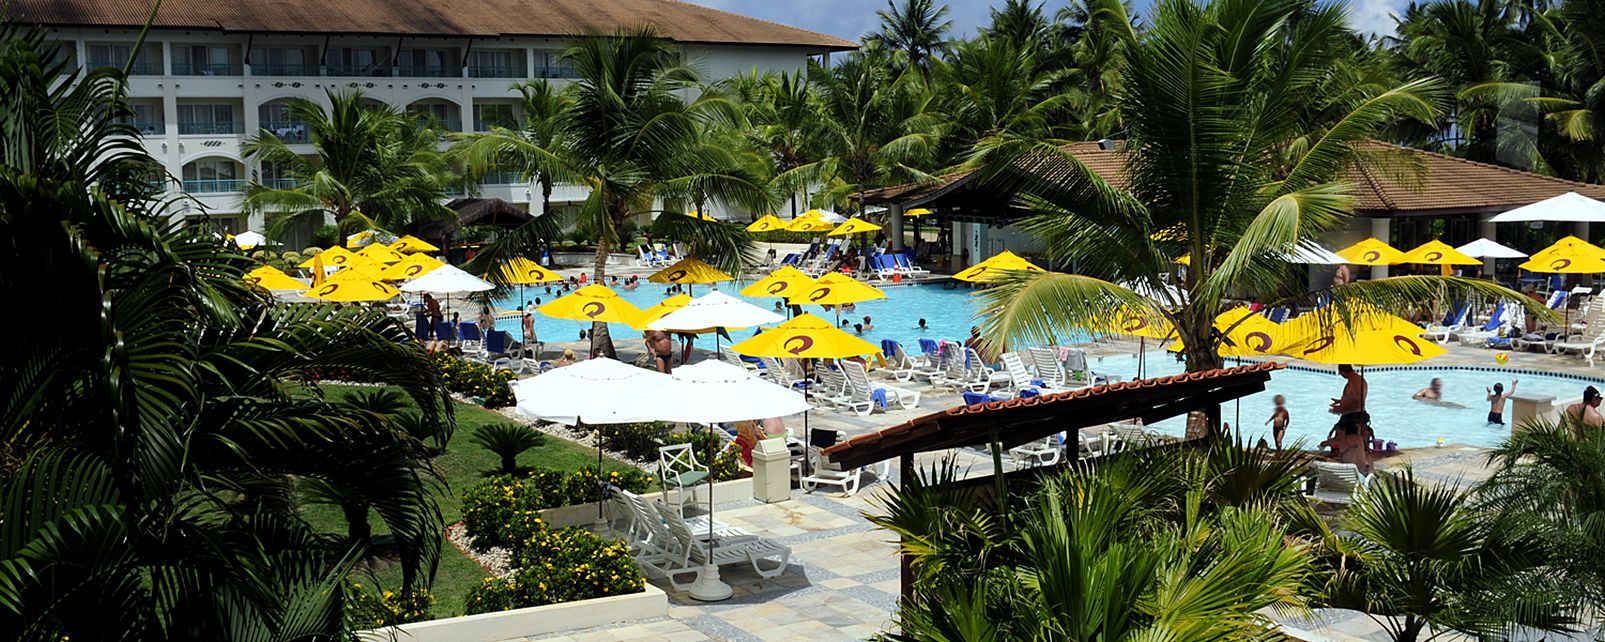 Hotel Costa do Sauipe All Inclusive